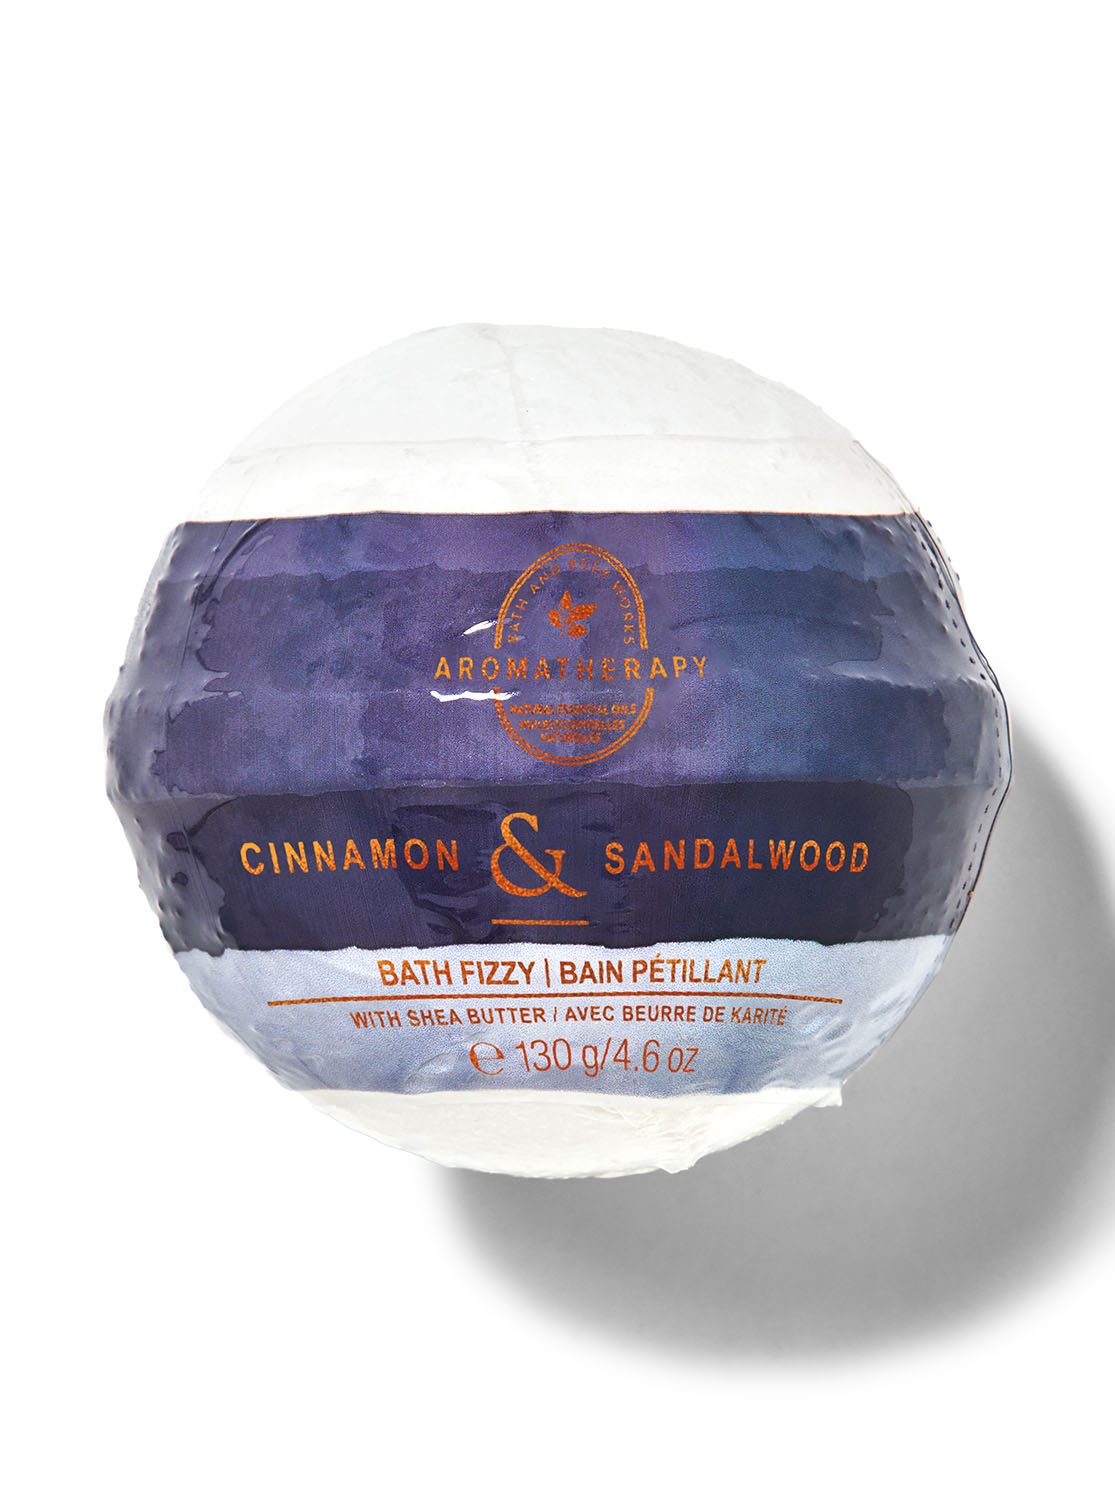 Cinnamon Sandalwood Bath Fizzy | Bath and Body Works